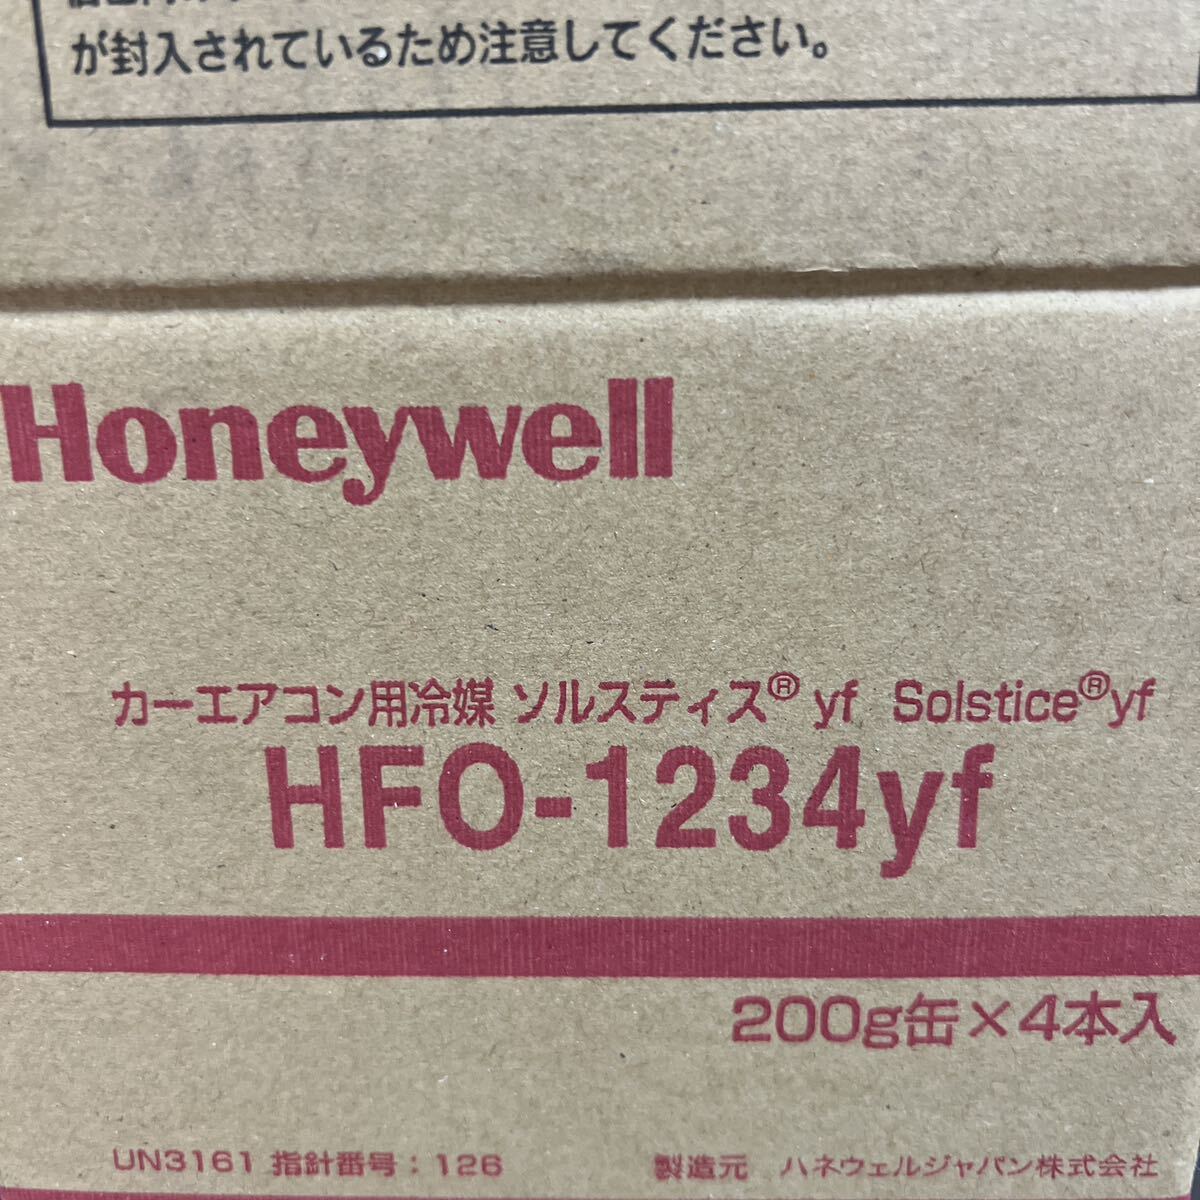 エアコンガス カーエアコン Honeywell HFO-1234yf R-1234yf 新冷媒 カーエアコンガス 200g×4本セット①の画像3